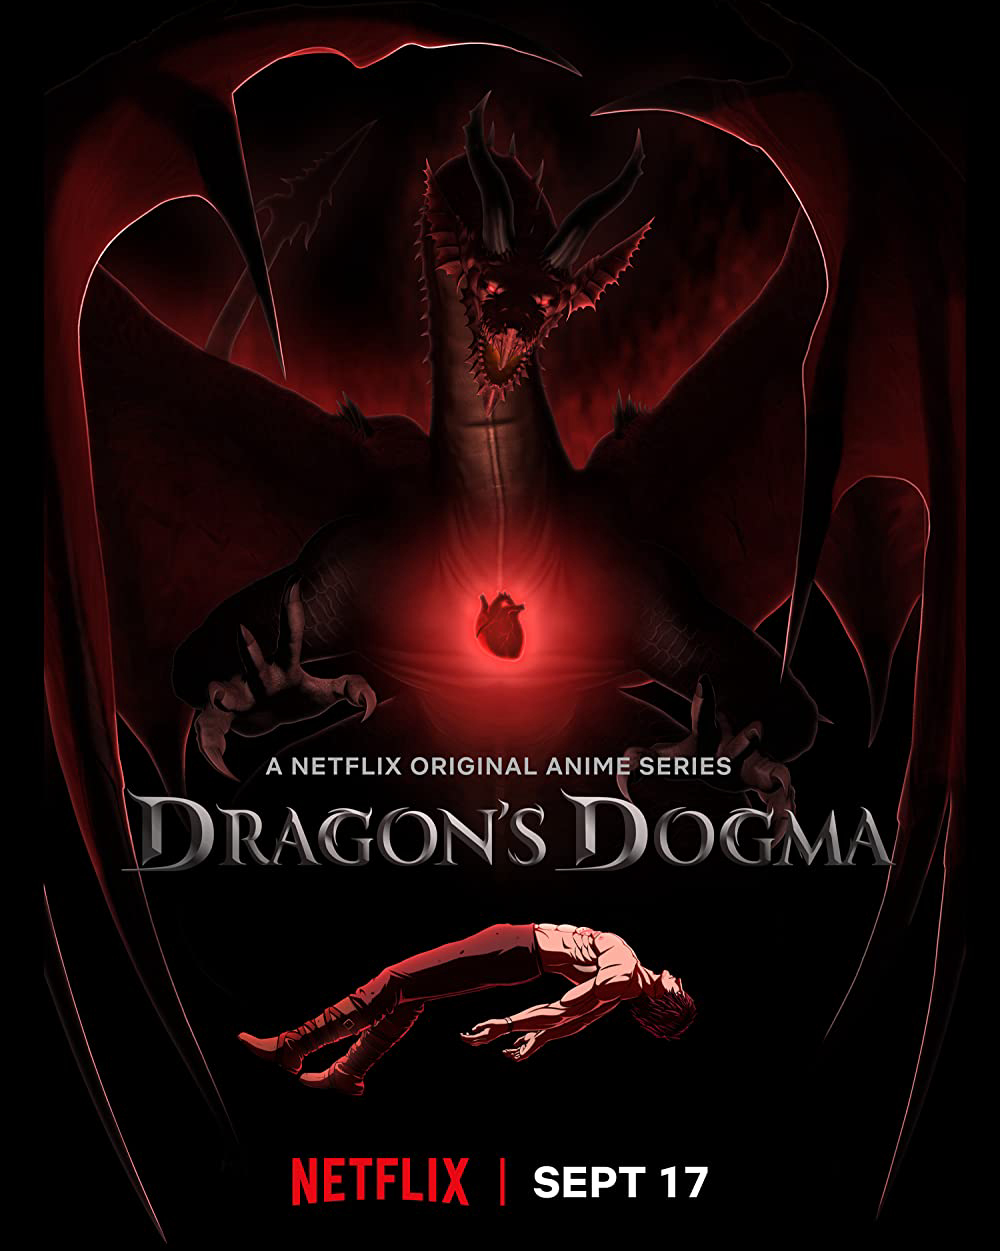 Giáo lý rồng - Dragon's Dogma